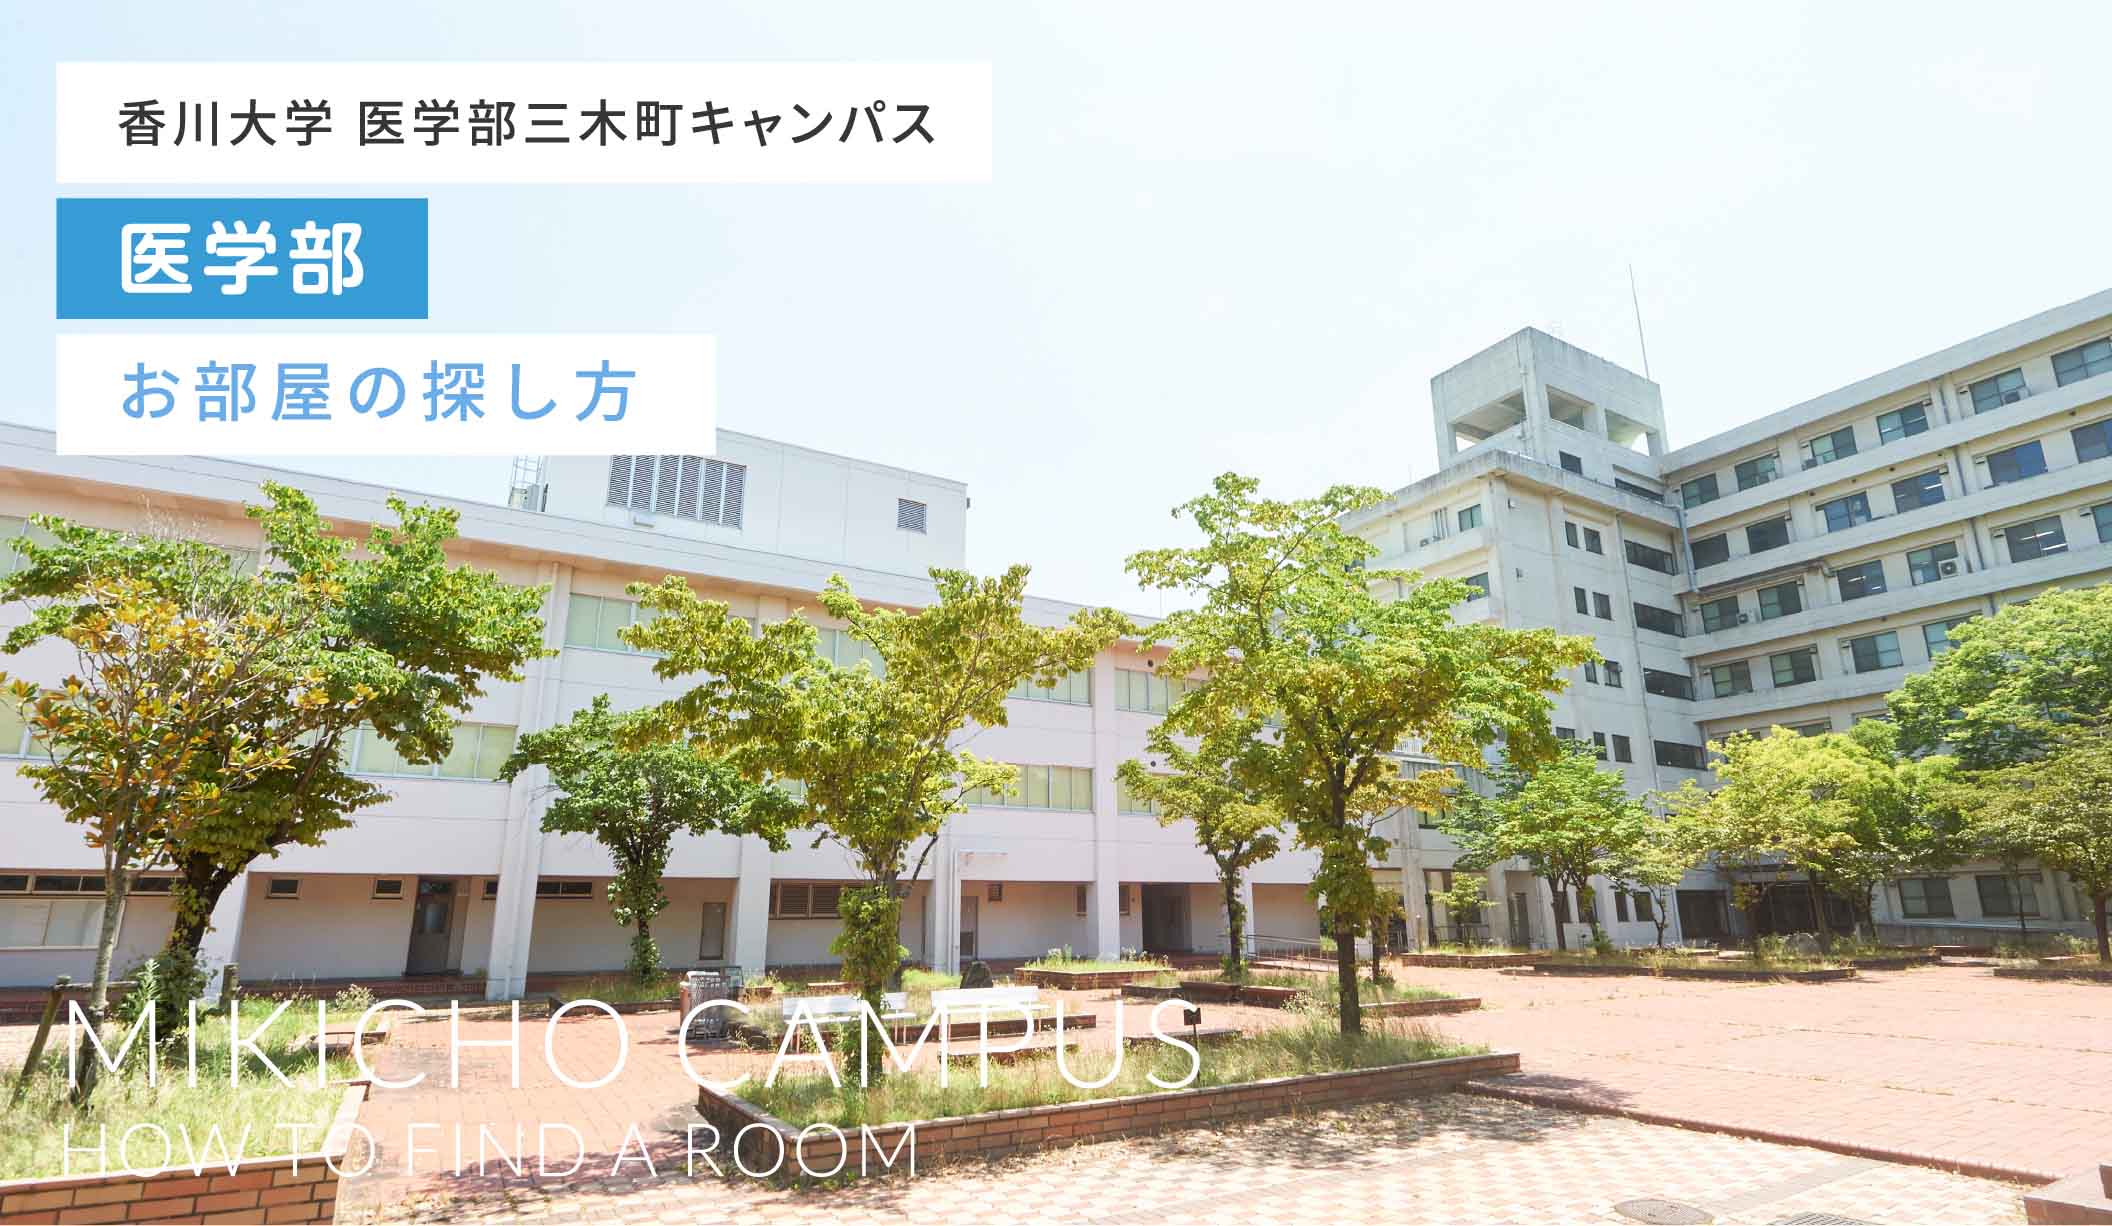 香川大学 医学部 三木町キャンパスお部屋の探し方